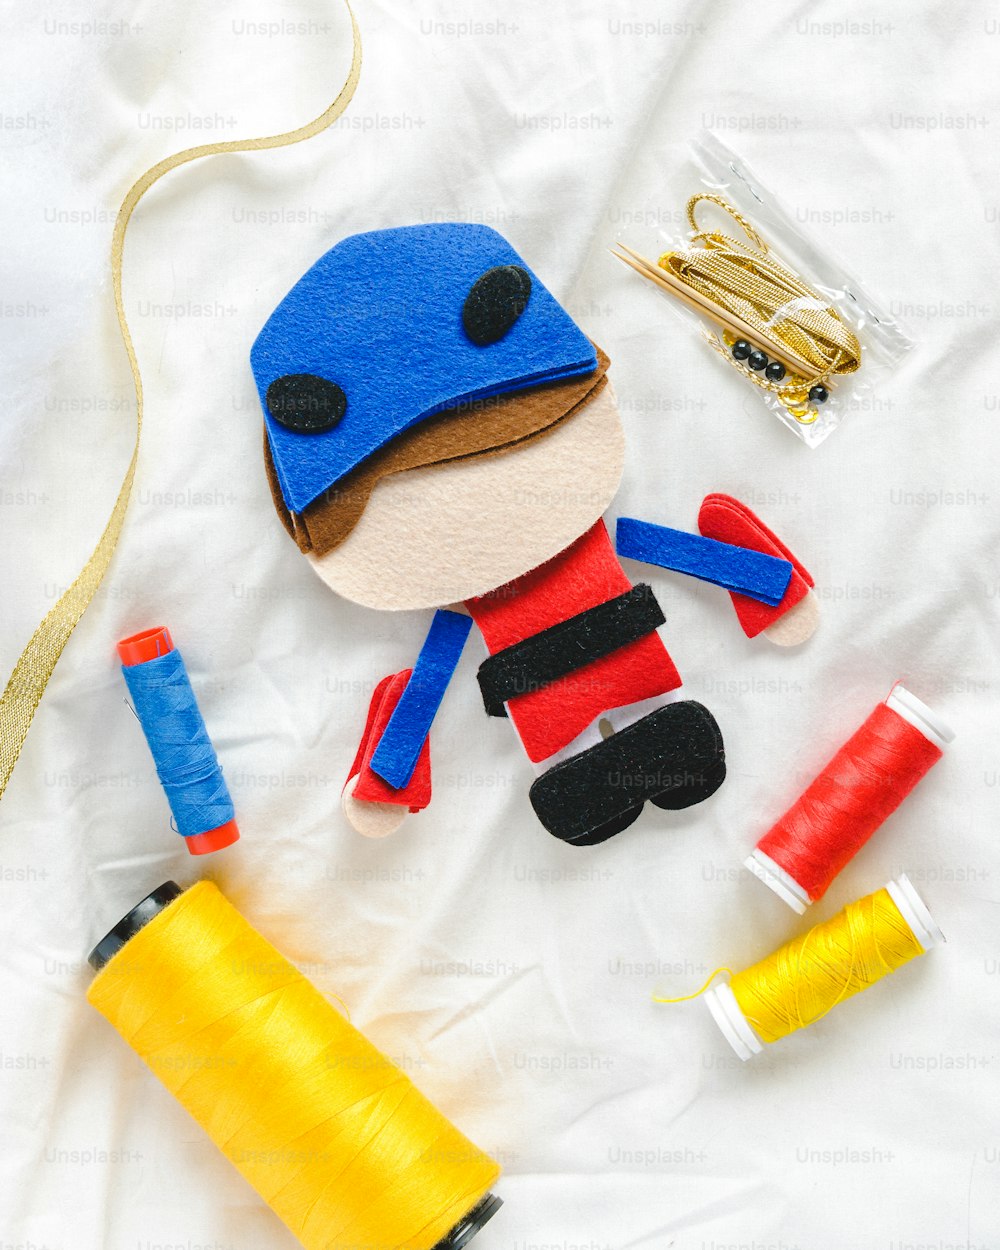 Un juguete con un sombrero azul y un carrete amarillo de hilo